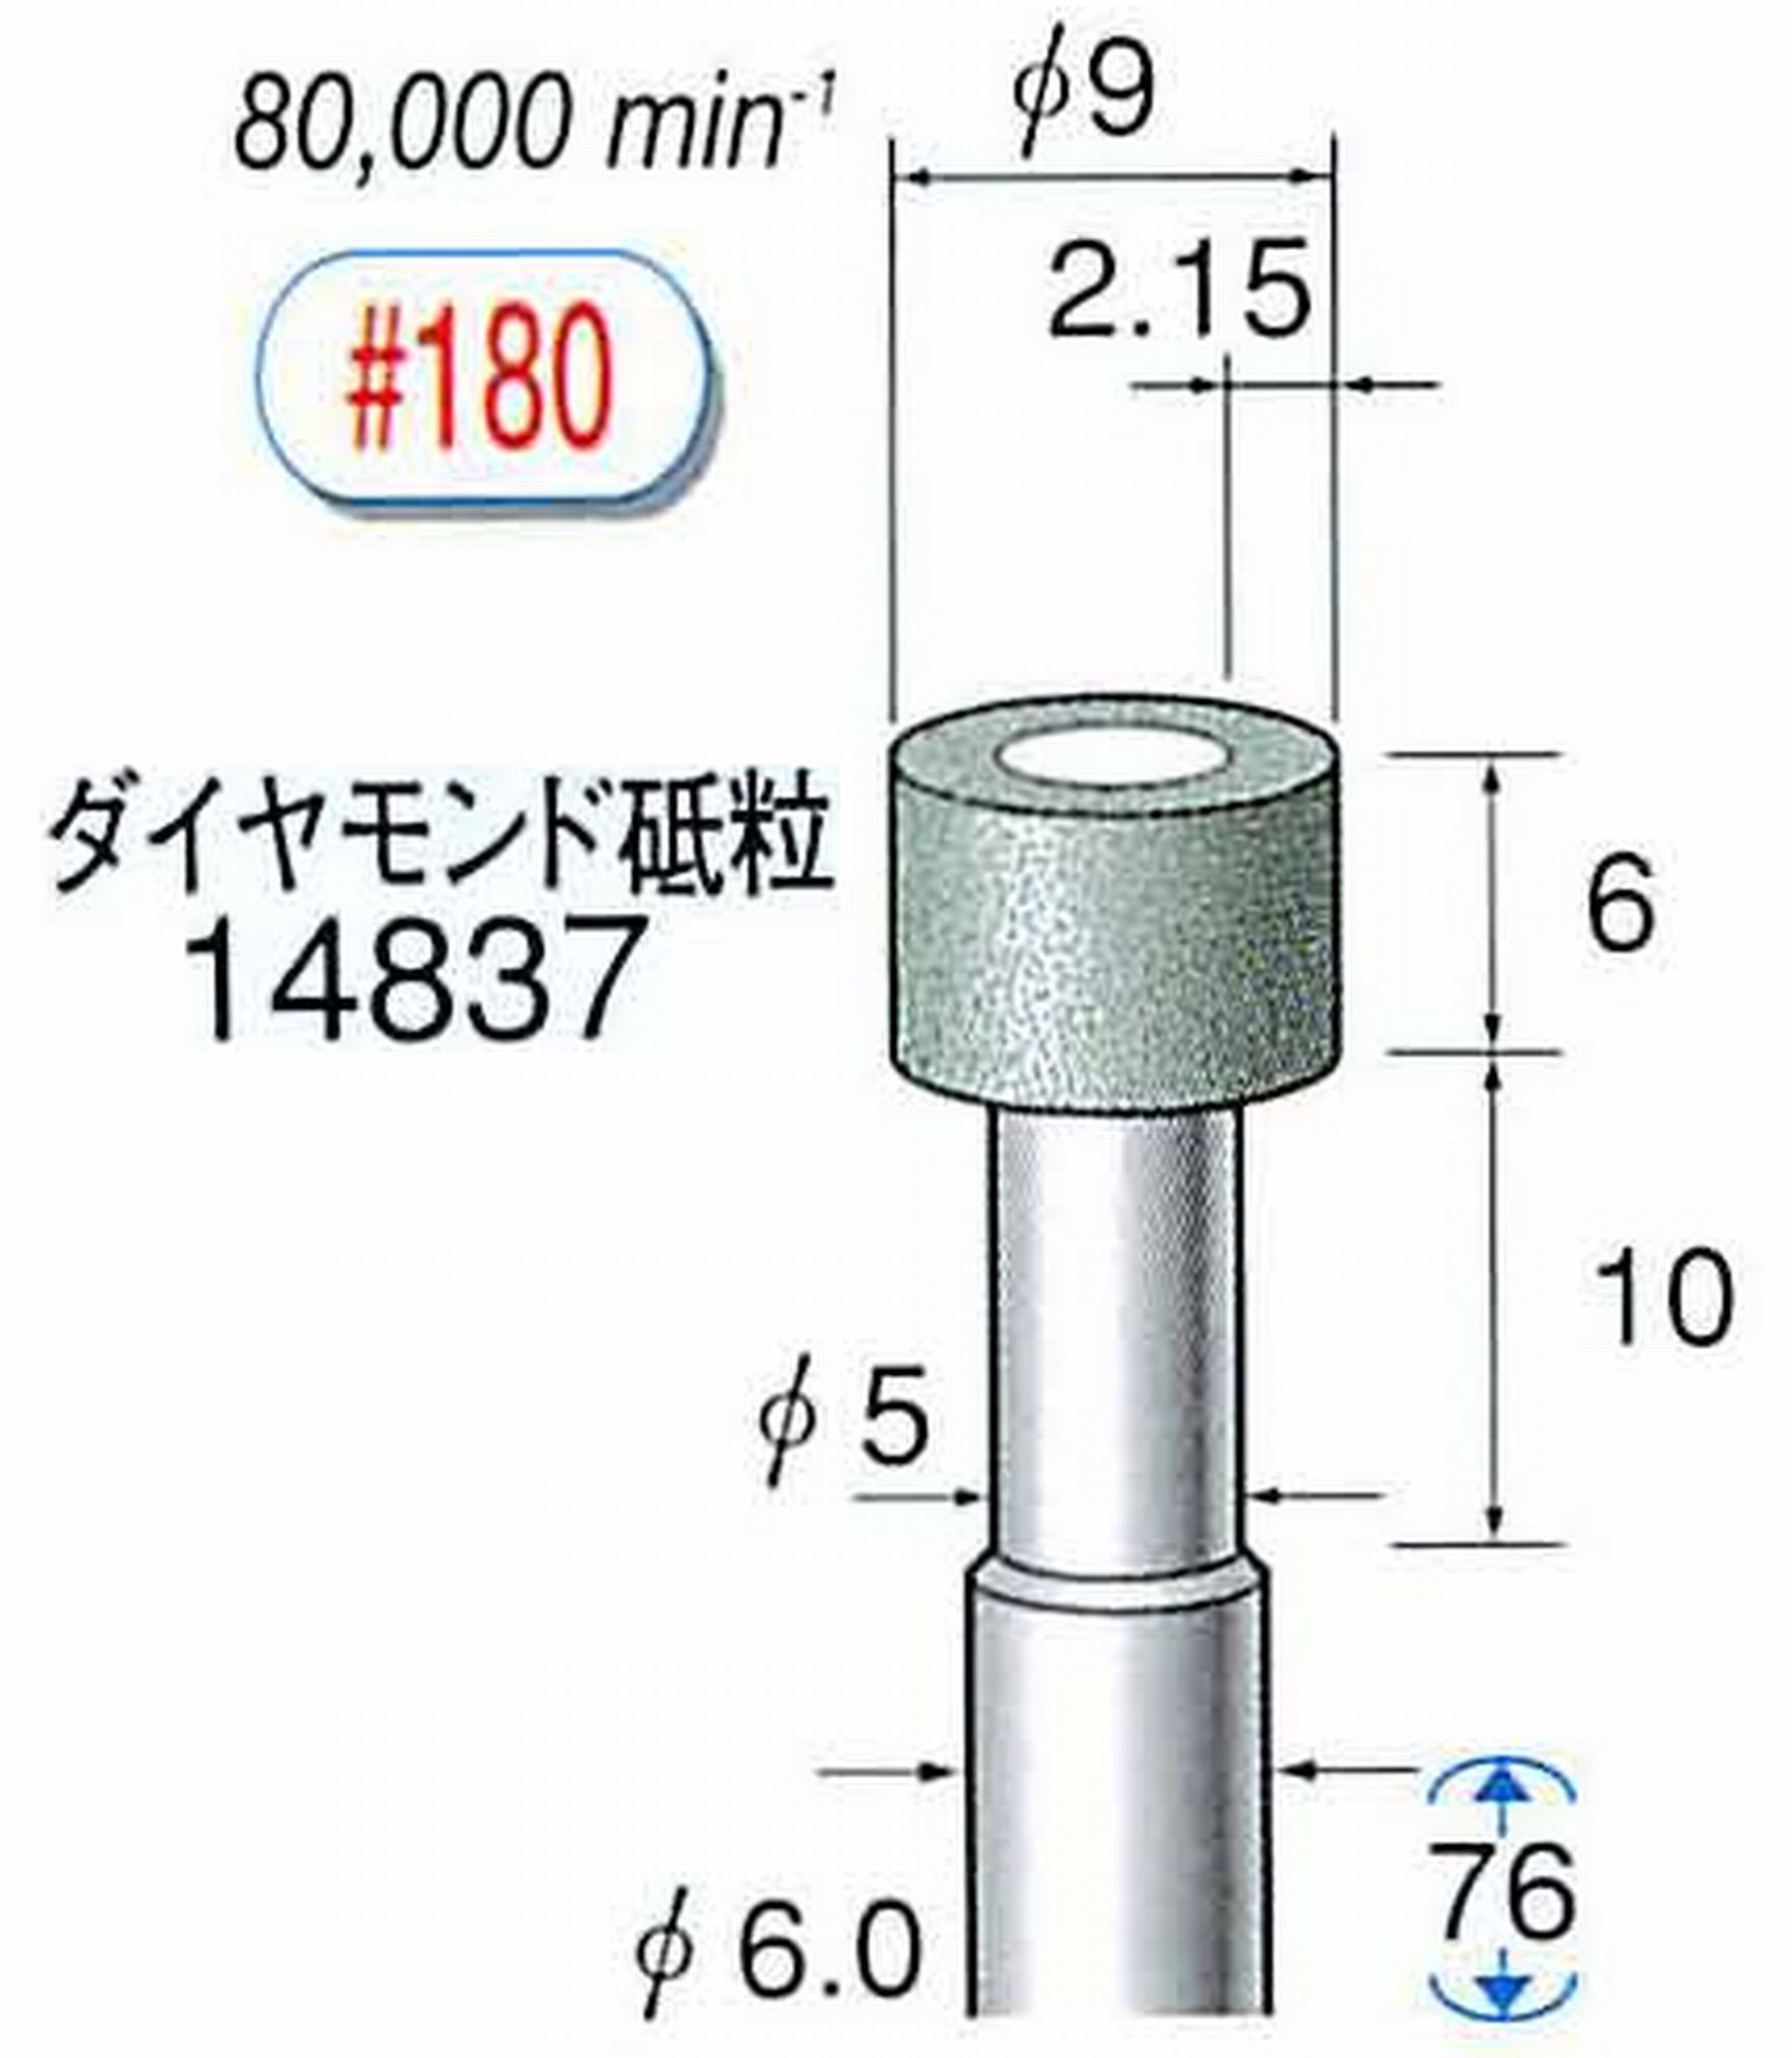 ナカニシ/NAKANISHI ビトリファイドダイヤモンド砥石 ダイヤモンド砥粒 軸径(シャンク)φ6.0mm 14837